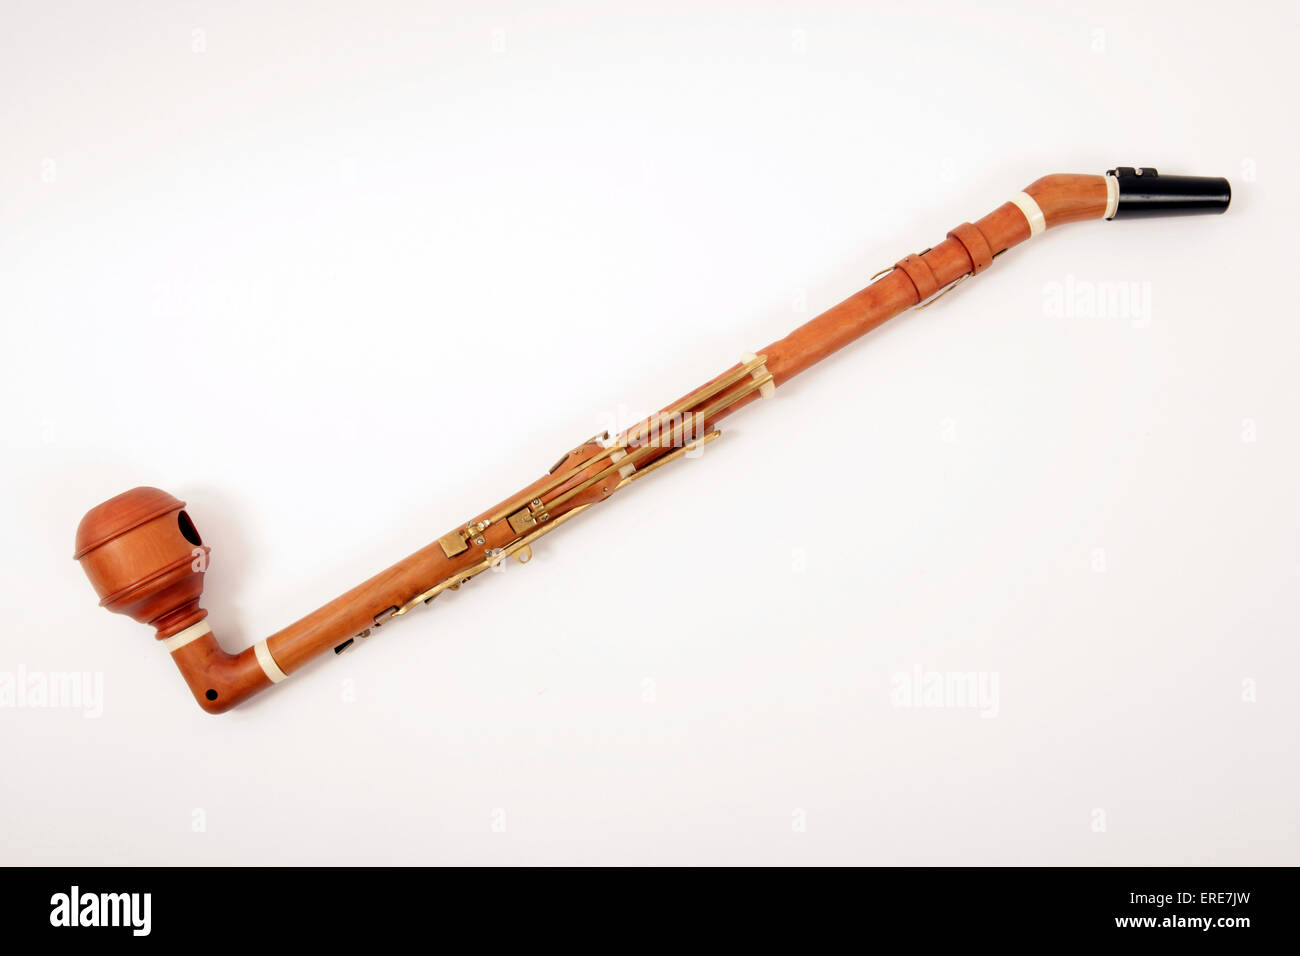 Bassettklarinette, historischen Instrumenten, Kopie eines Instruments für Anton Stadler in den 1700er Jahren gemacht. Klassik. Stockfoto